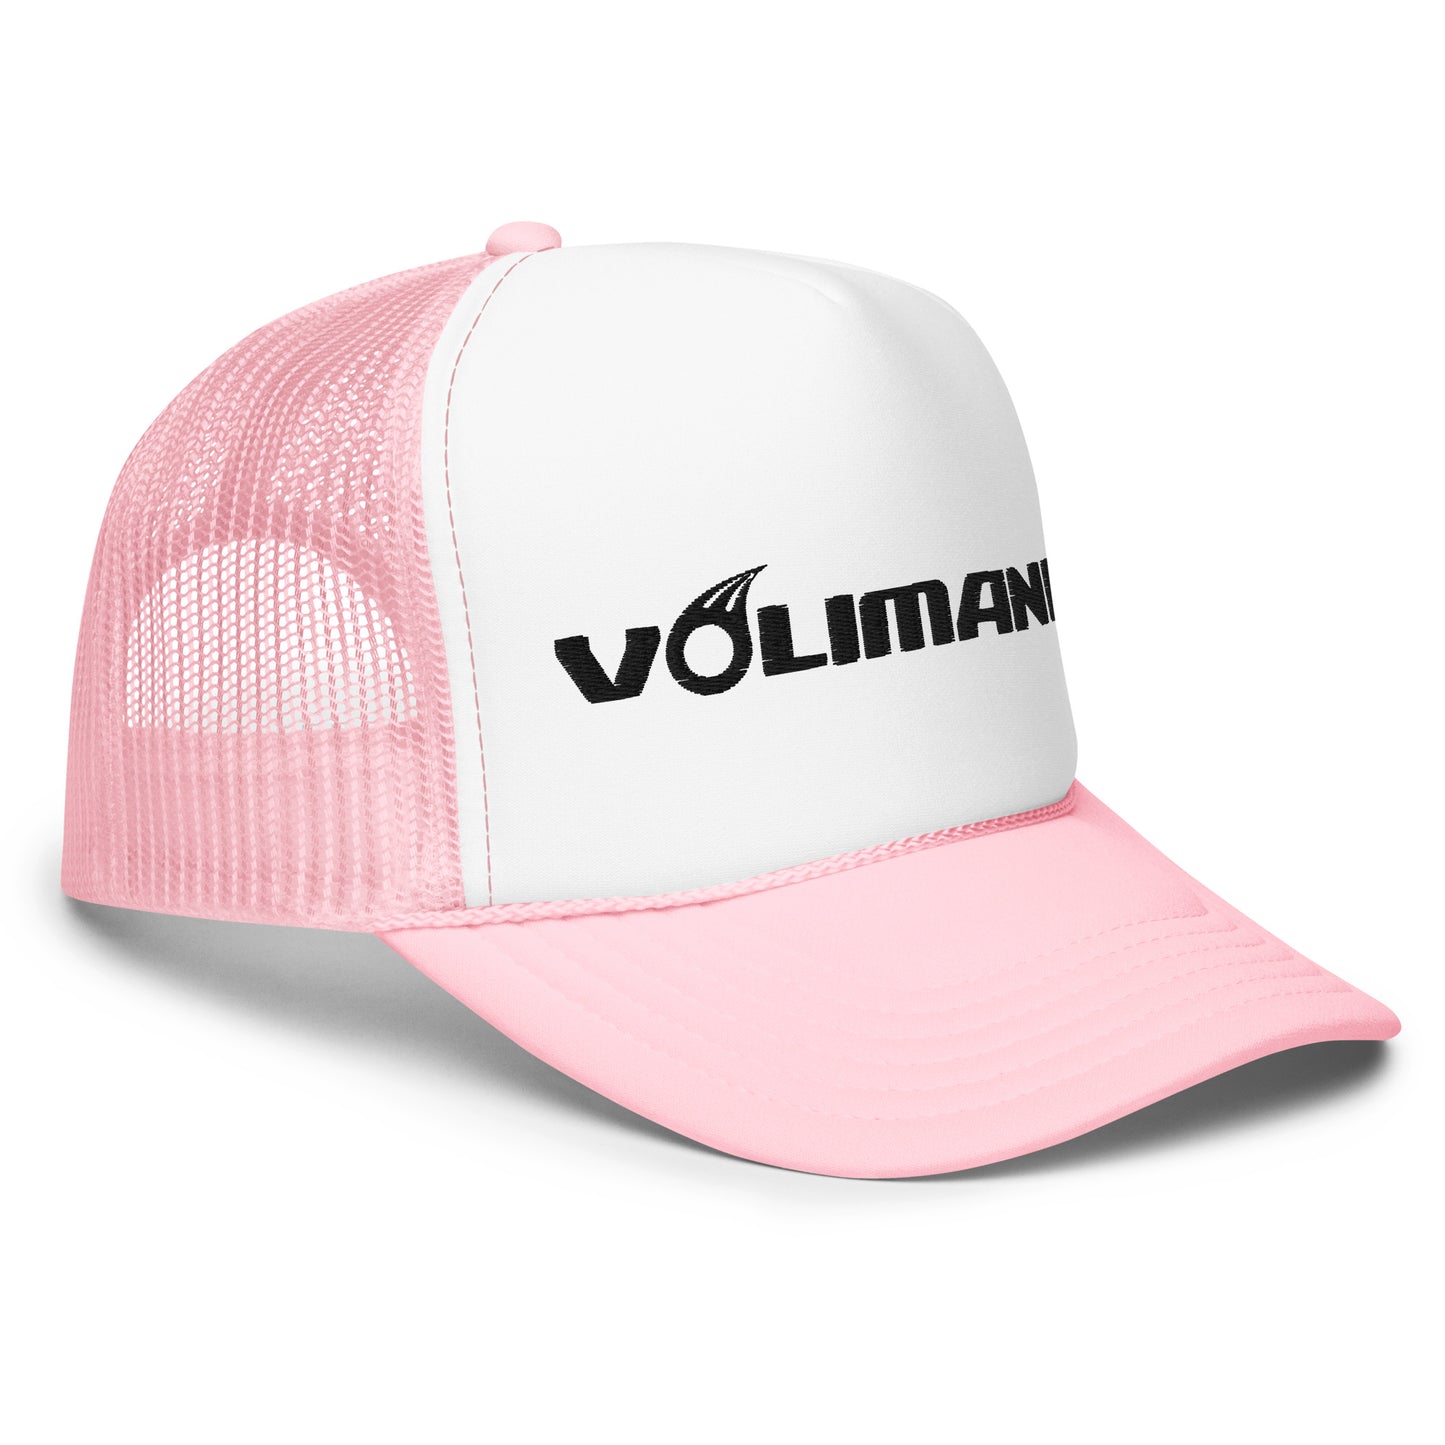 Volimania Foam Trucker Hat